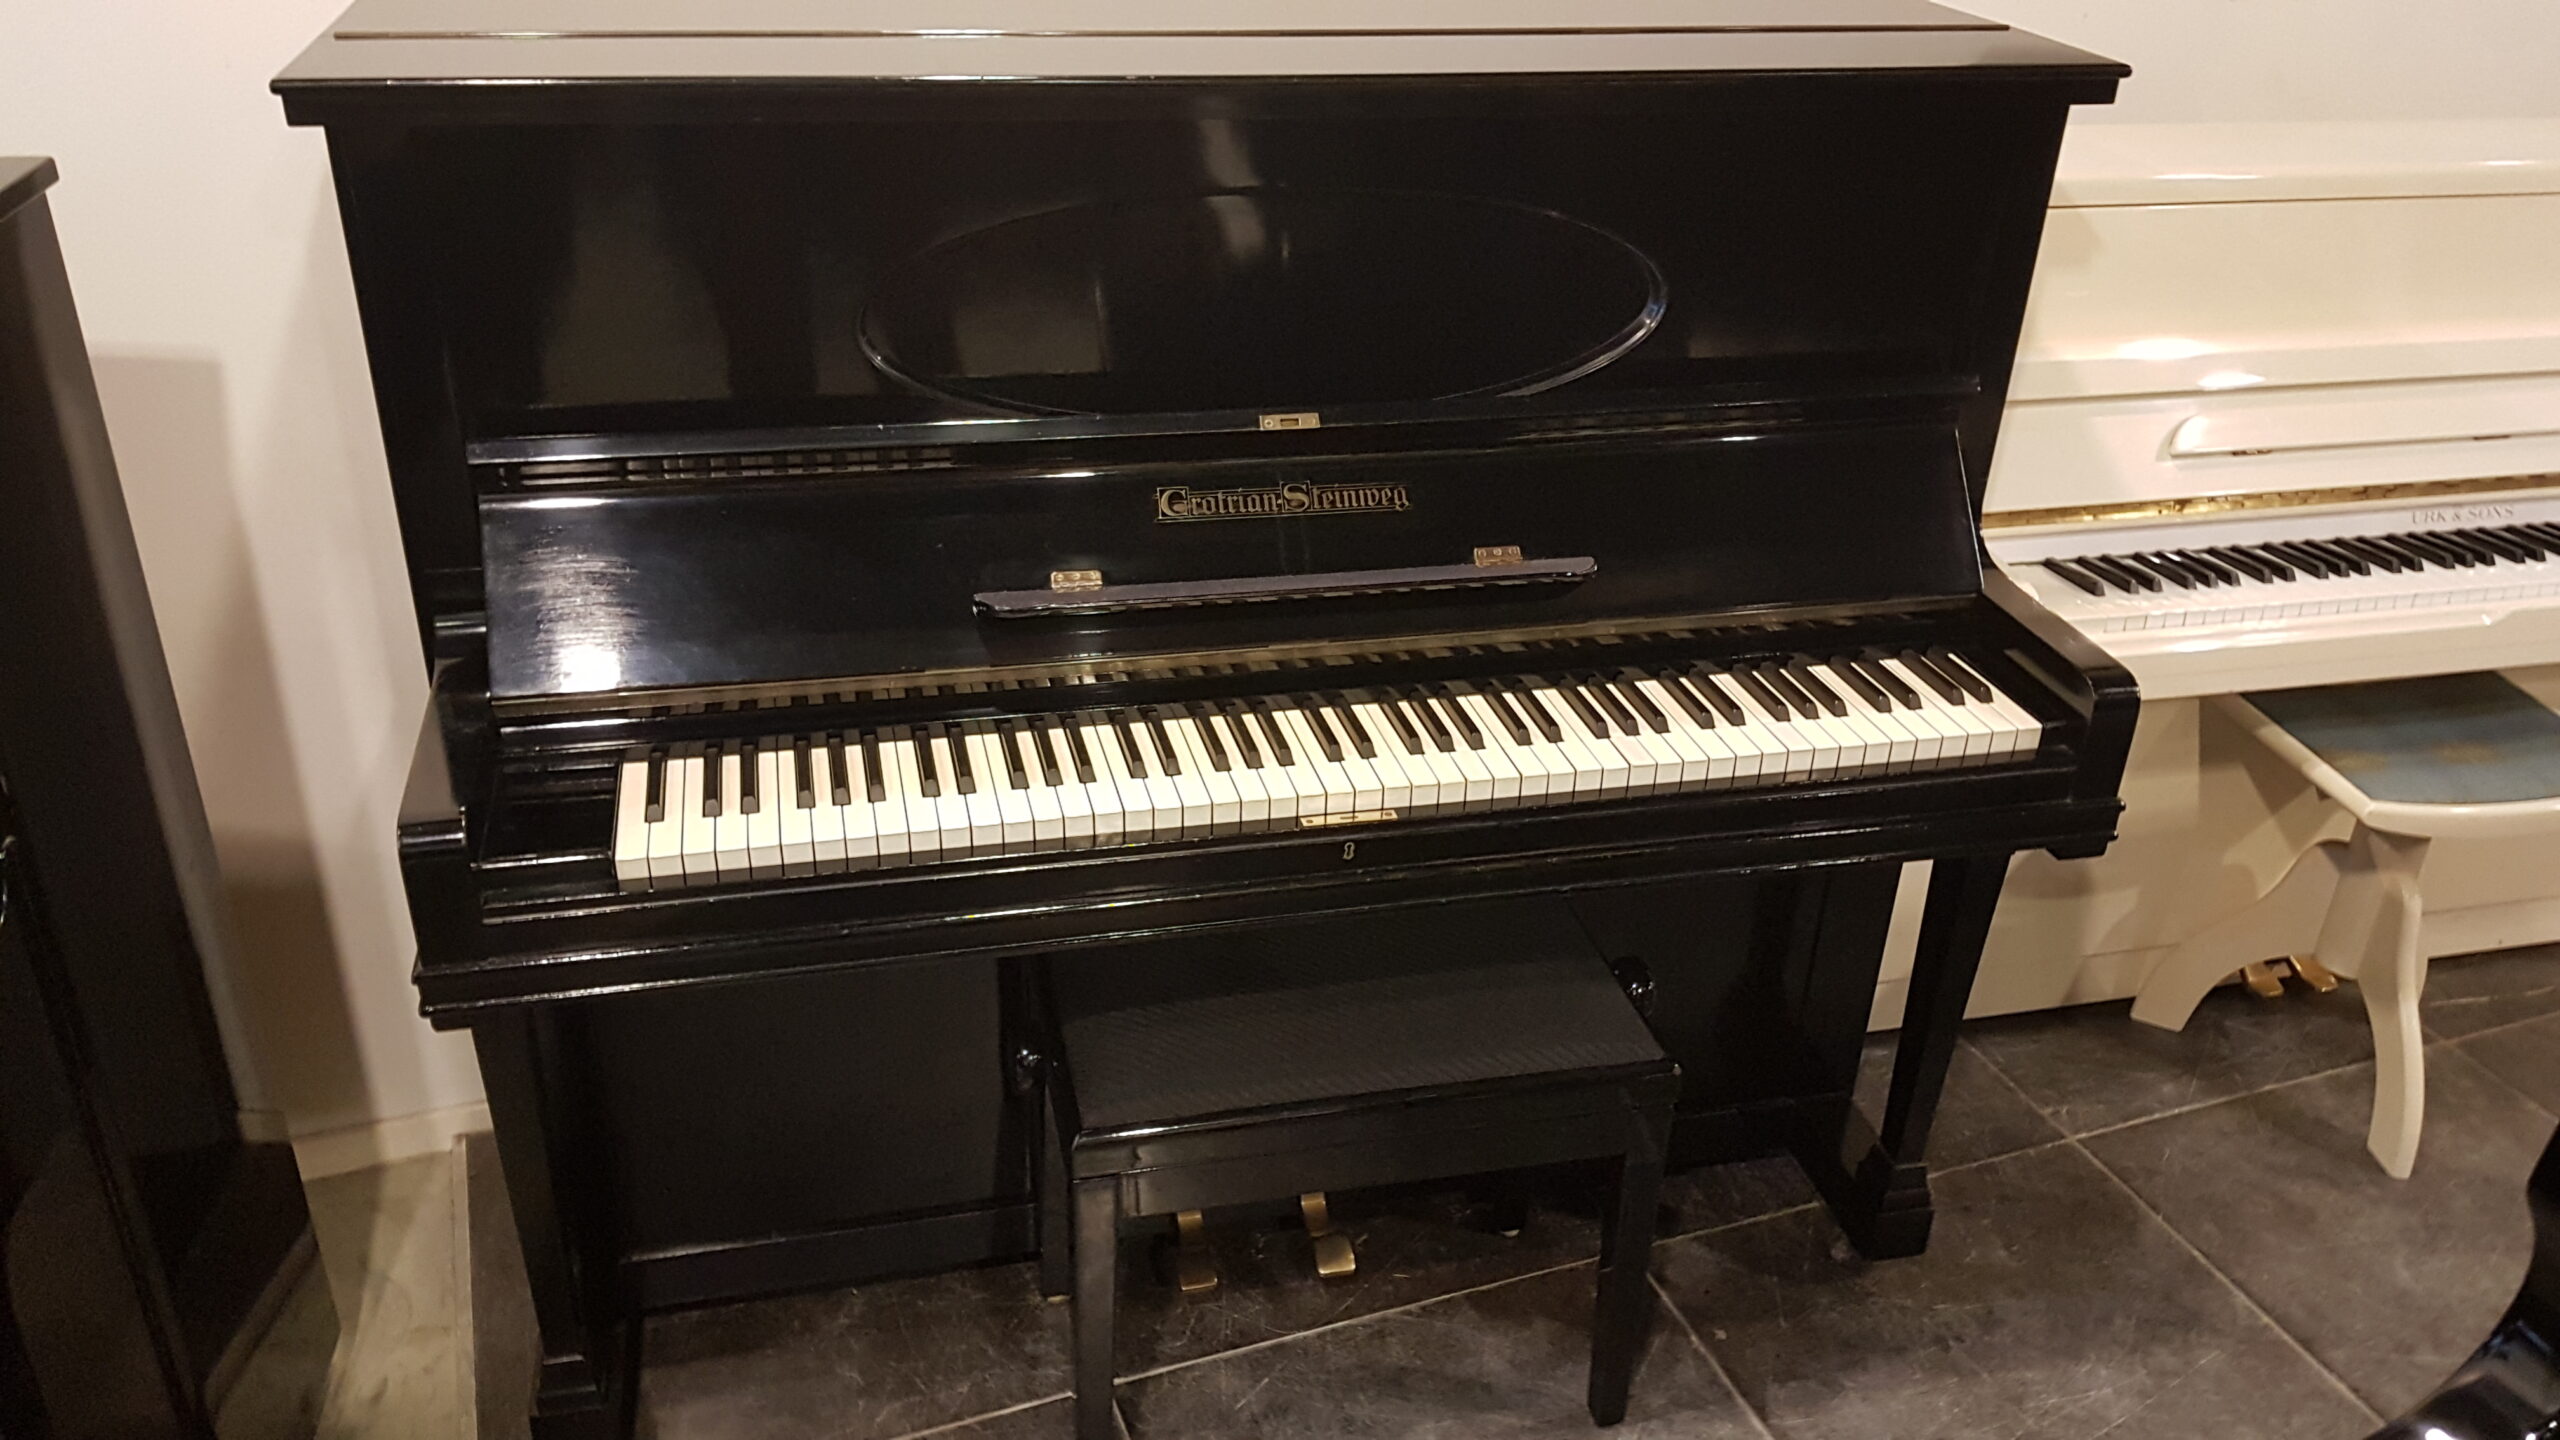 Duitse klasse piano Grotrian Steinweg 125, zwart hoogglans. Perfecte conditie. €  3990.–